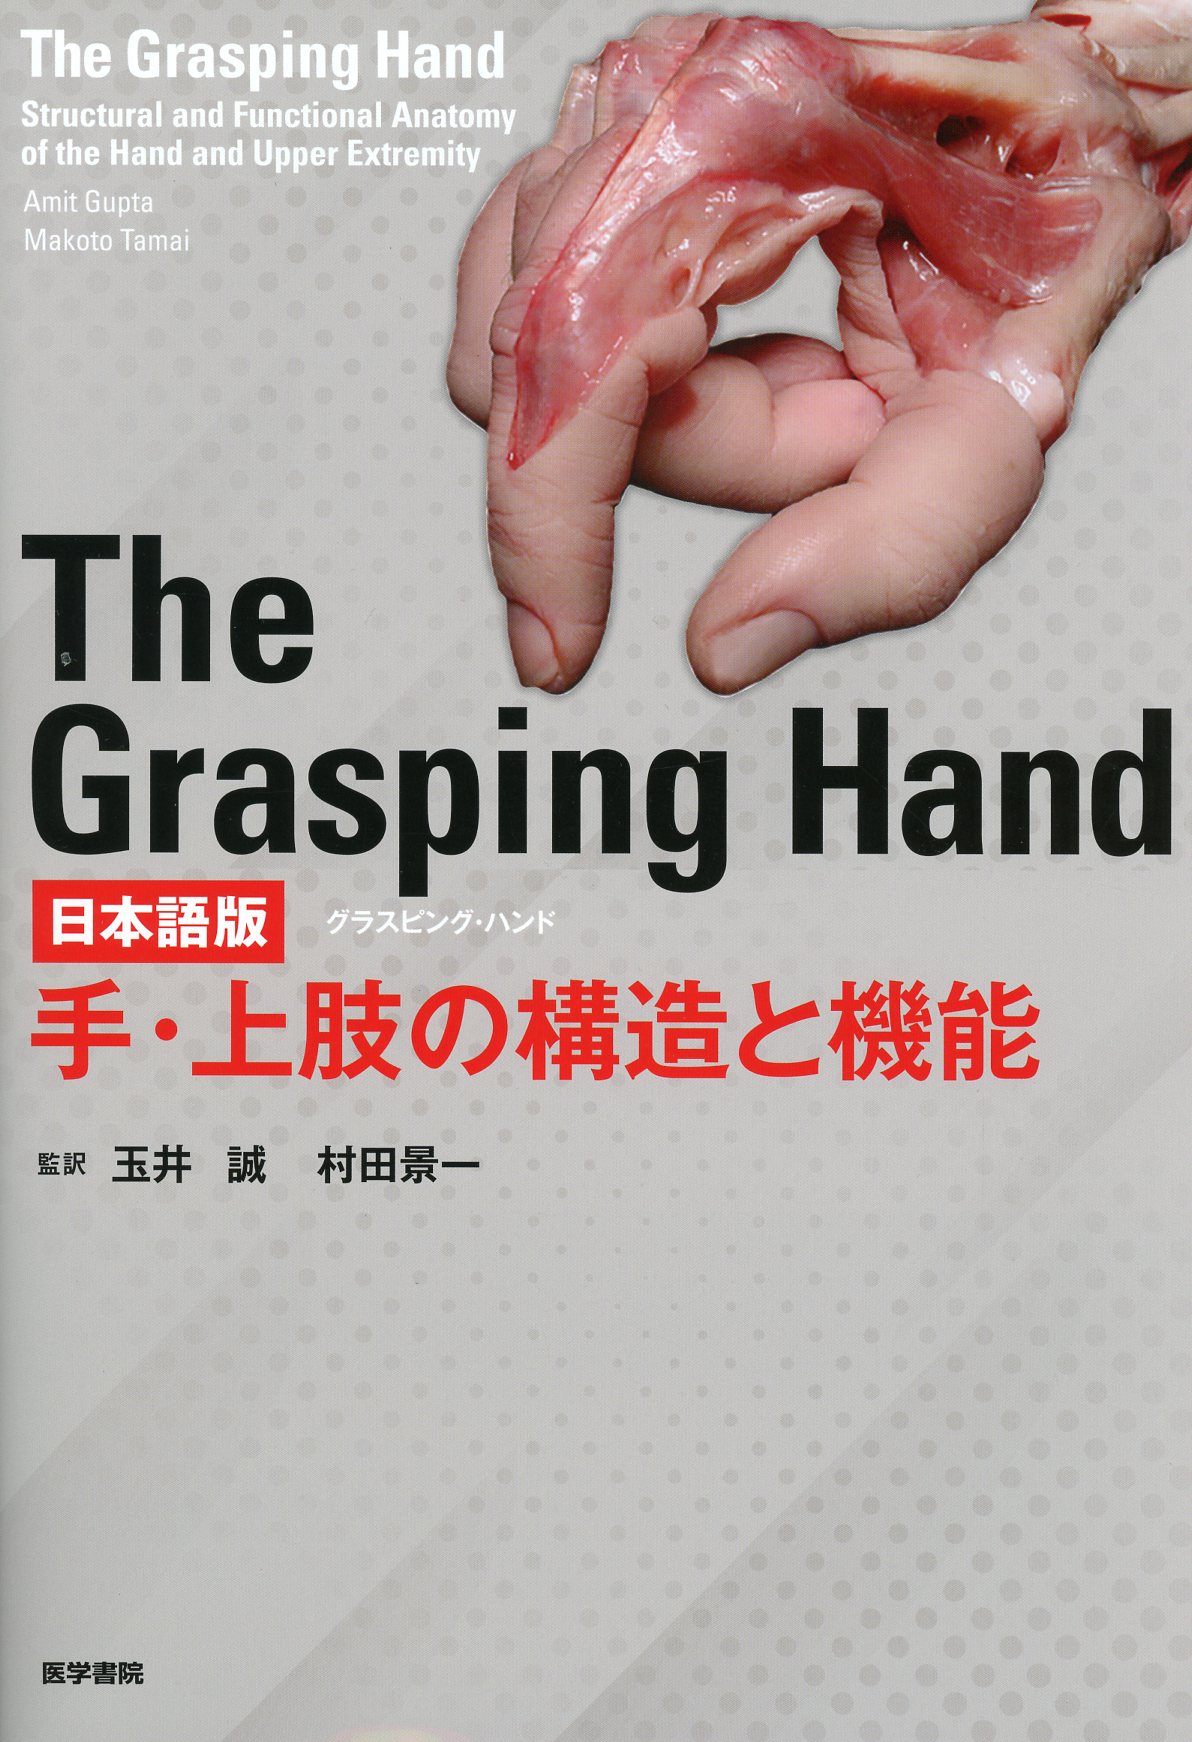 The Grasping Hand 日本語版（グラスピング・ハンド）　手・上肢の構造と機能